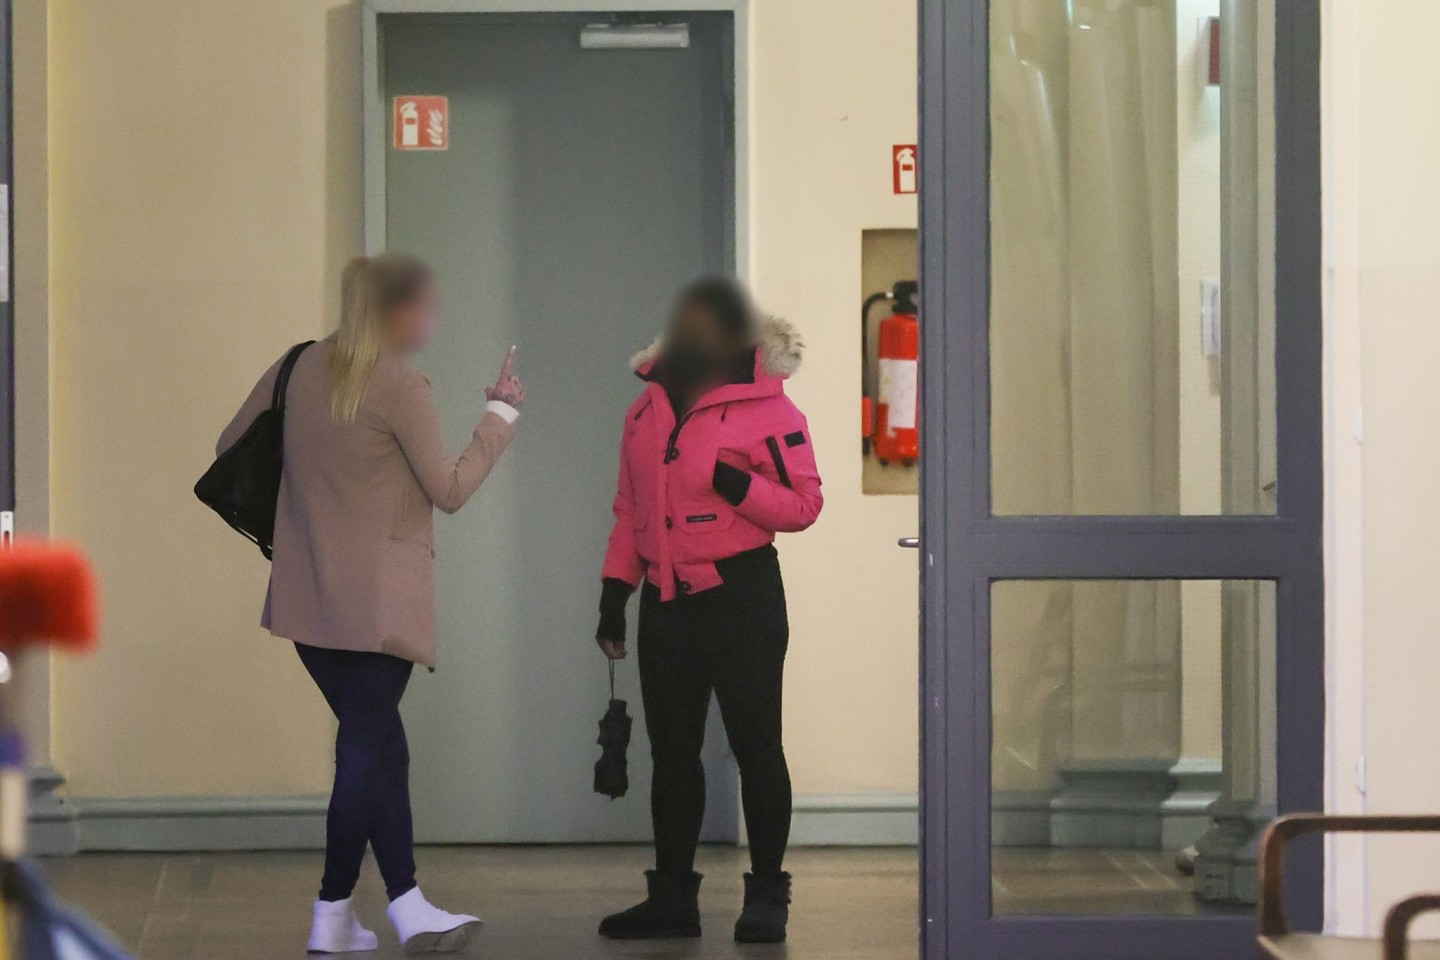 Zwei angeklagte Frauen warten vor einem Gerichtssaal im Strafjustitzgebäude in Hamburg auf den Beginn der Verhandlung.